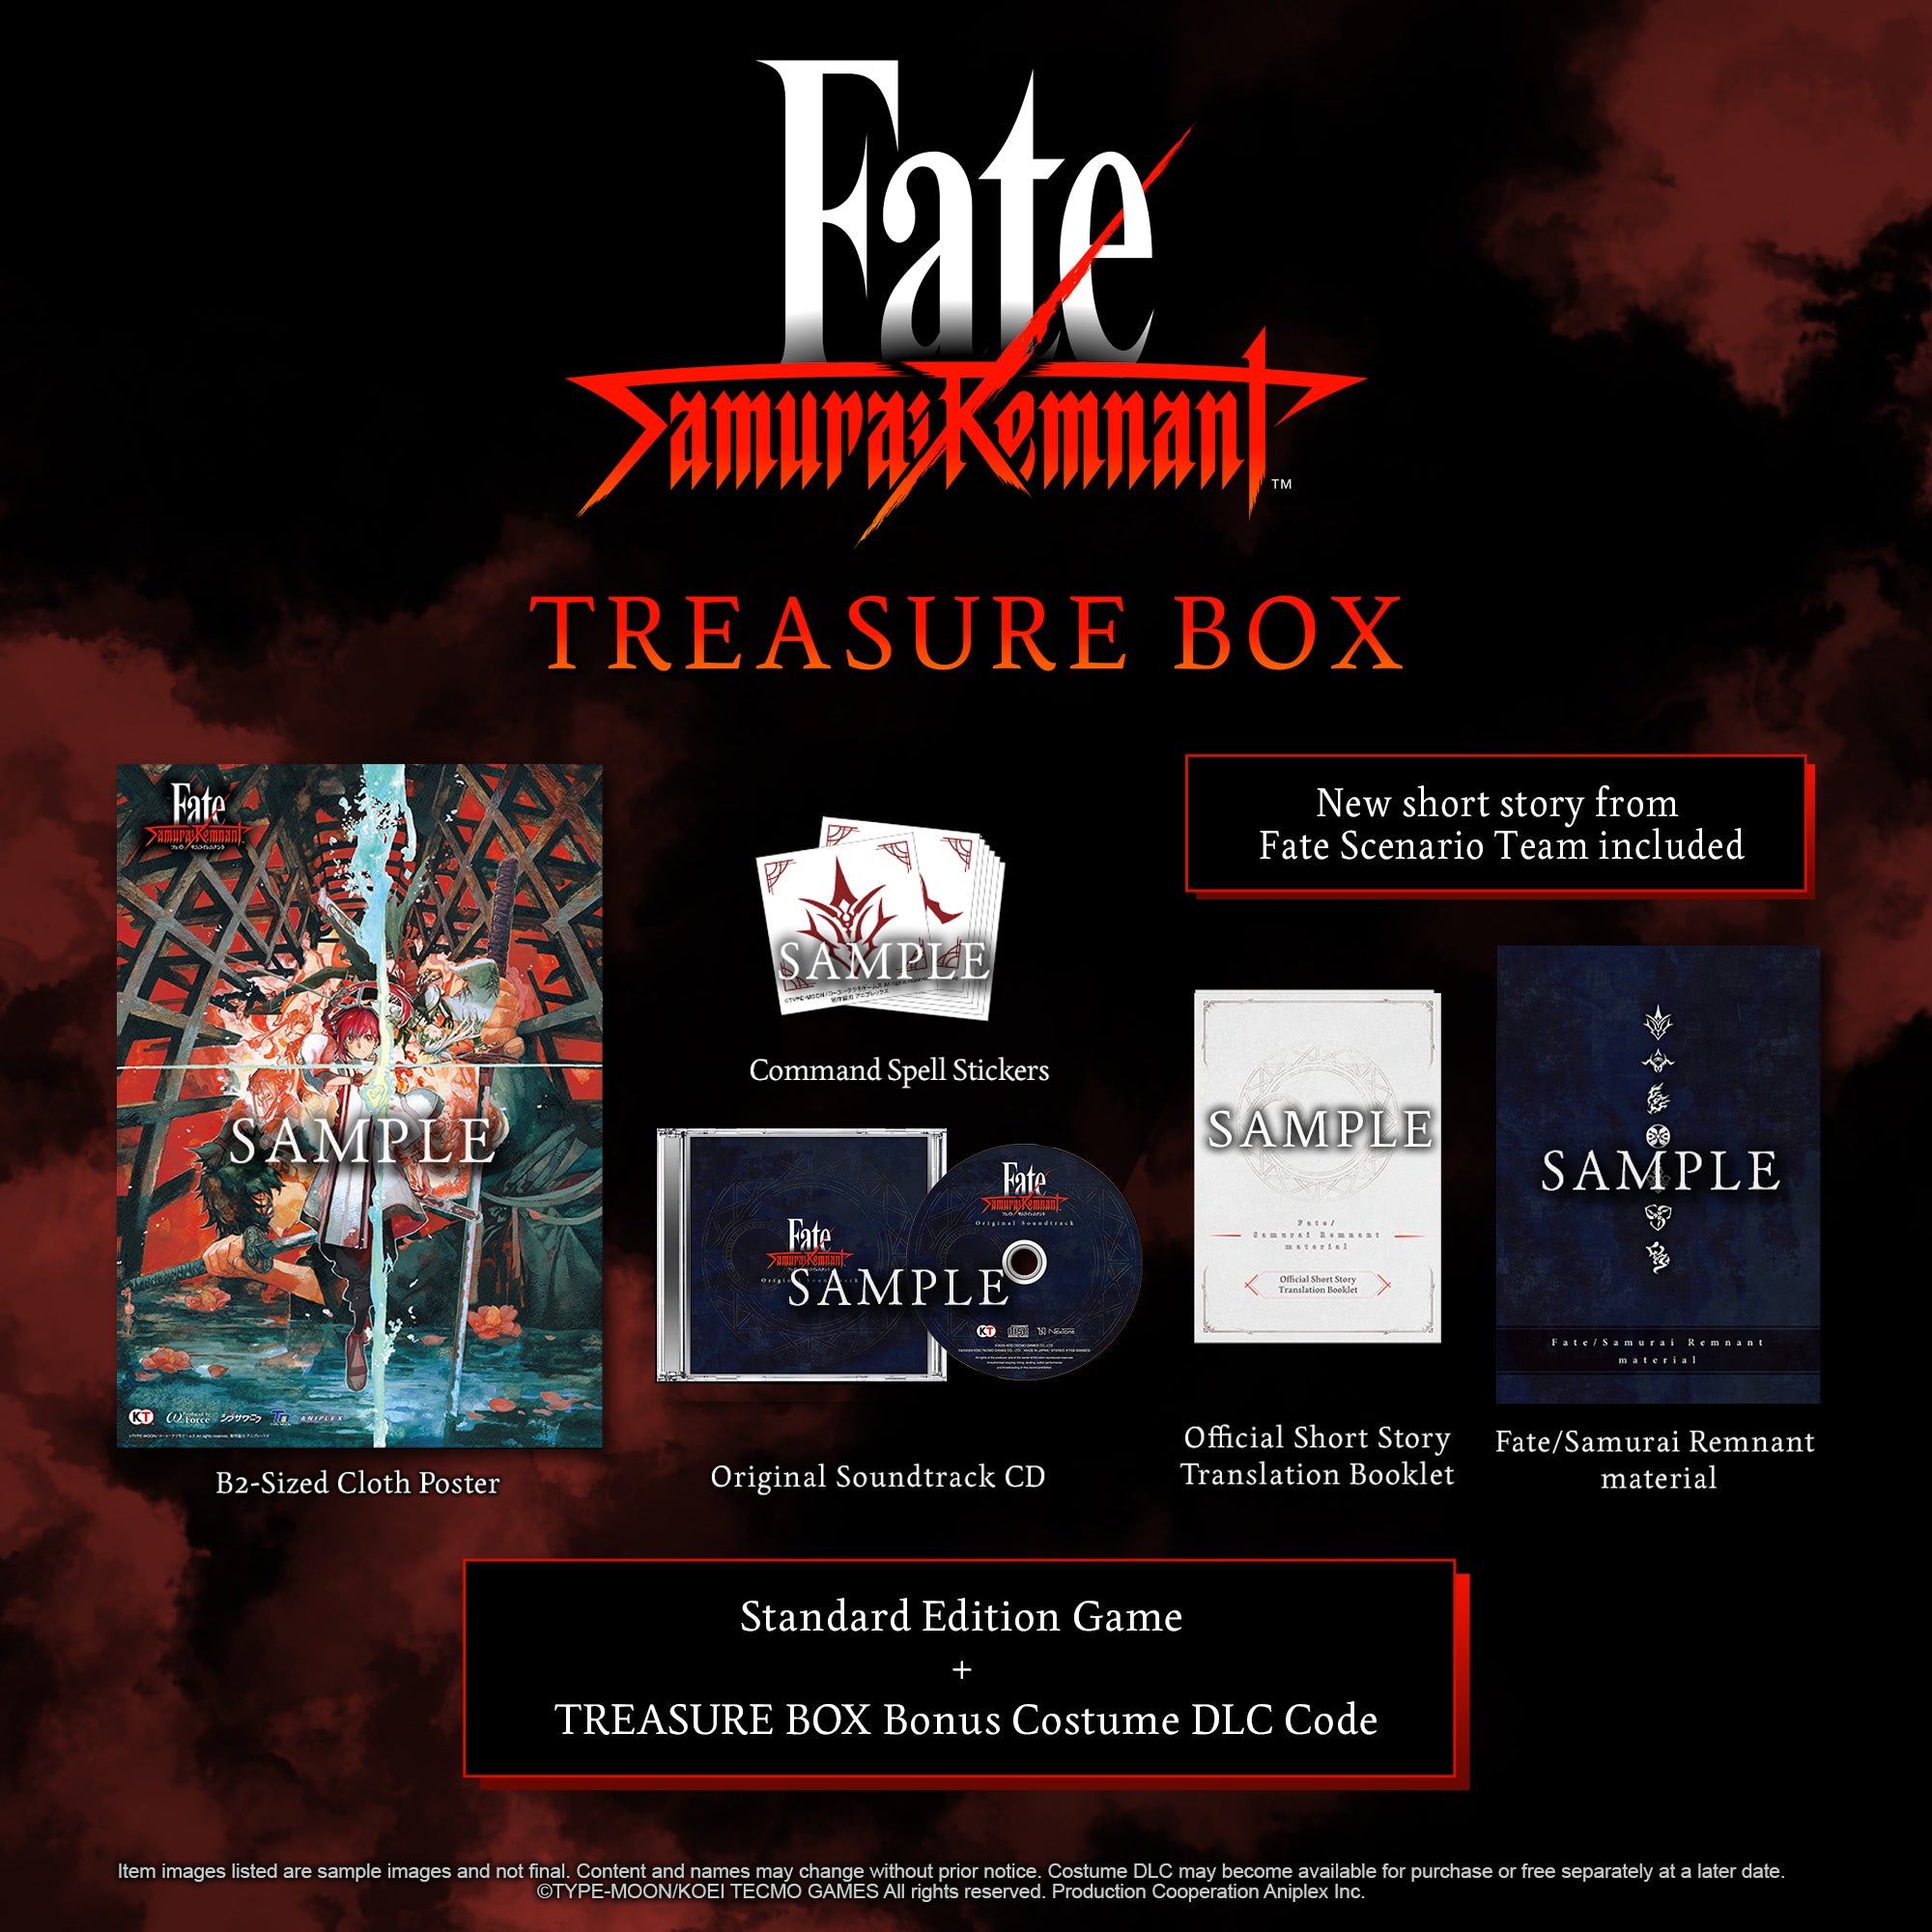 Fate/Samurai Remnant material サントラCD付 美品